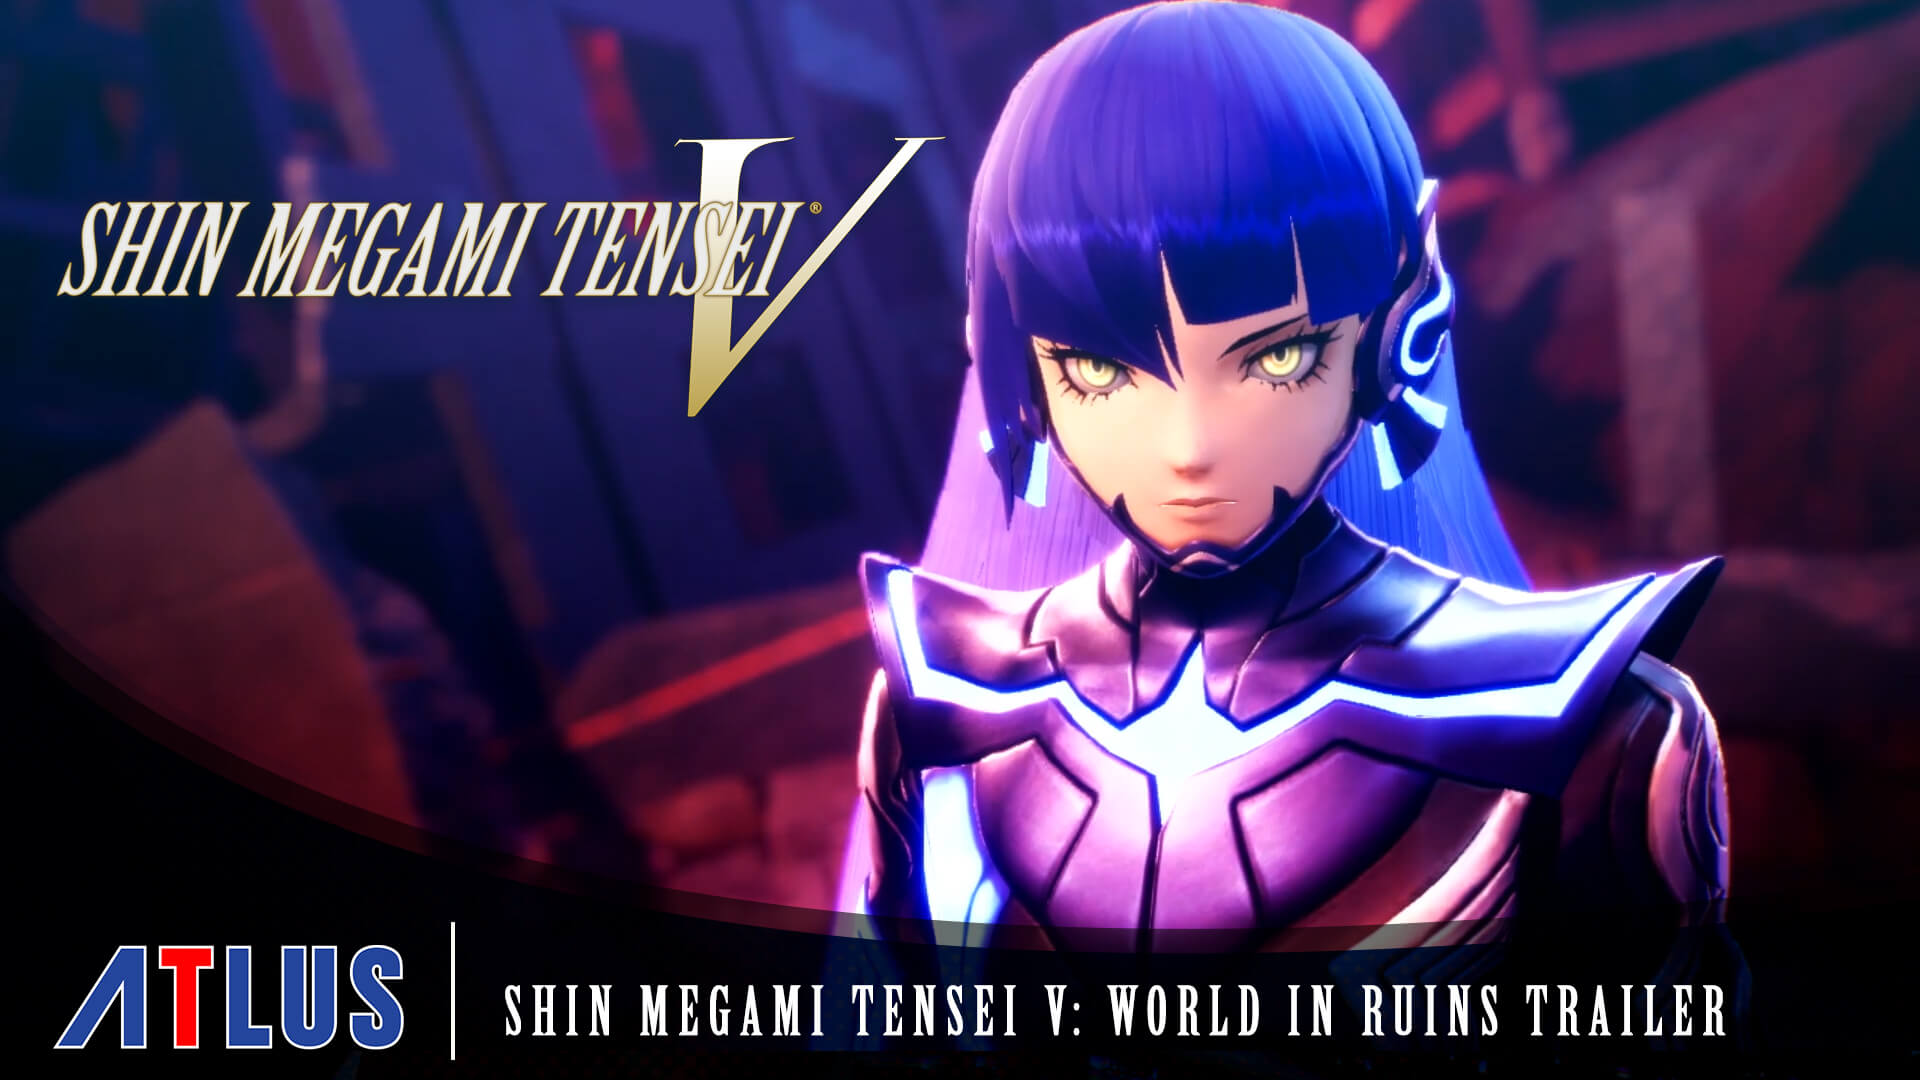 Shin Megami Tensei V Preview - New Exclusive Shin Megami Tensei V